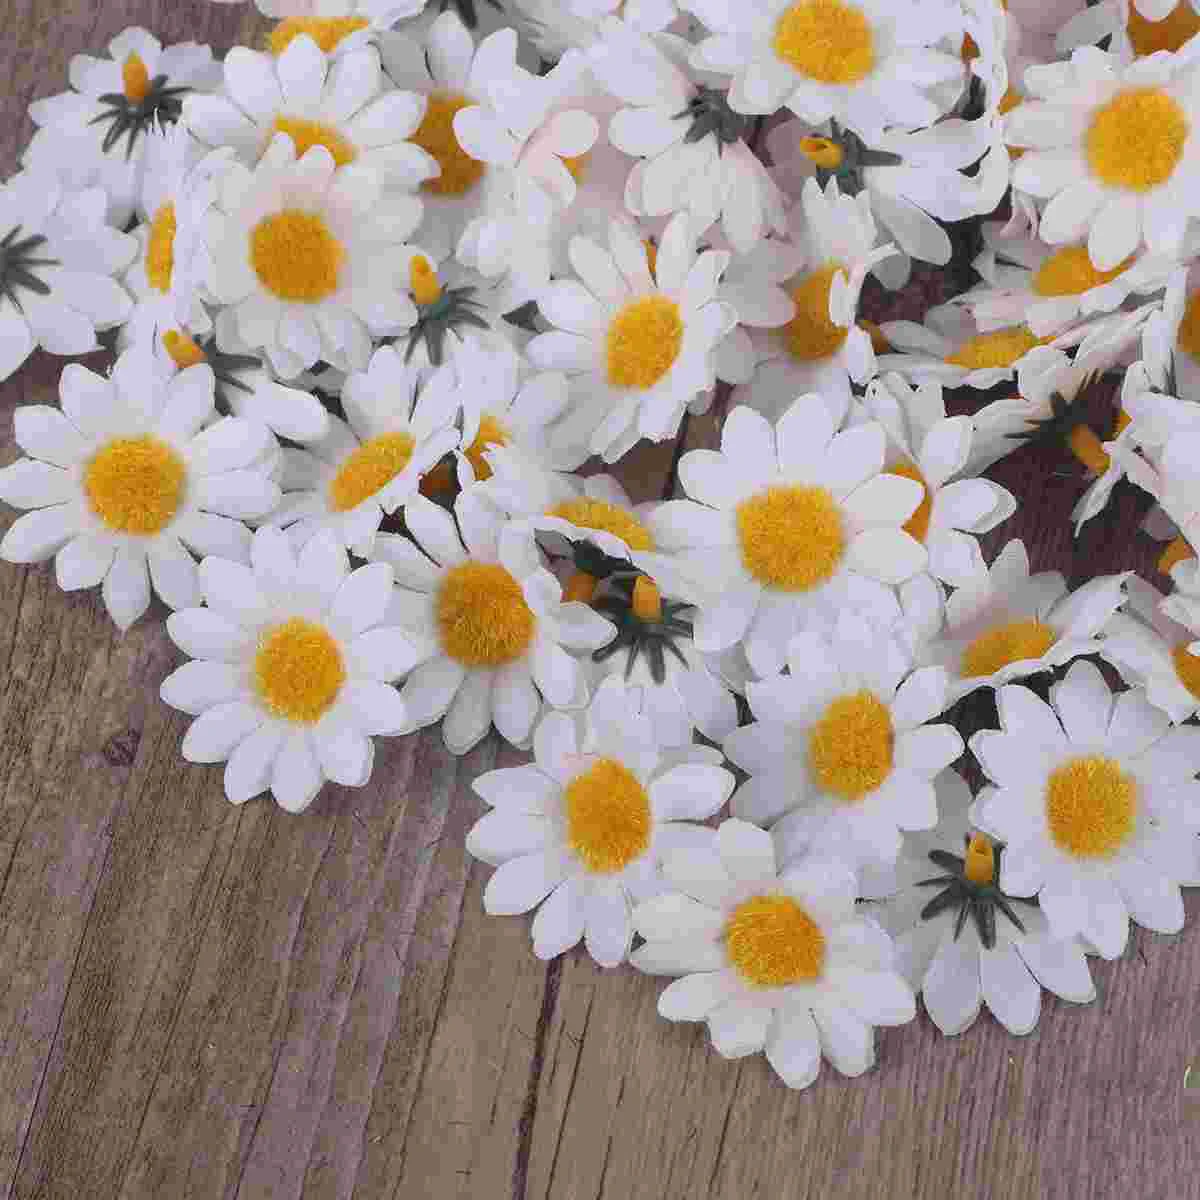 100 adet Yapay Papatya Kumaş Papatya Çiçek Yapay Papatya Krizantem Papatya Çiçekler Düğün Ev Dekorasyon için (Beyaz ) Görüntü 4